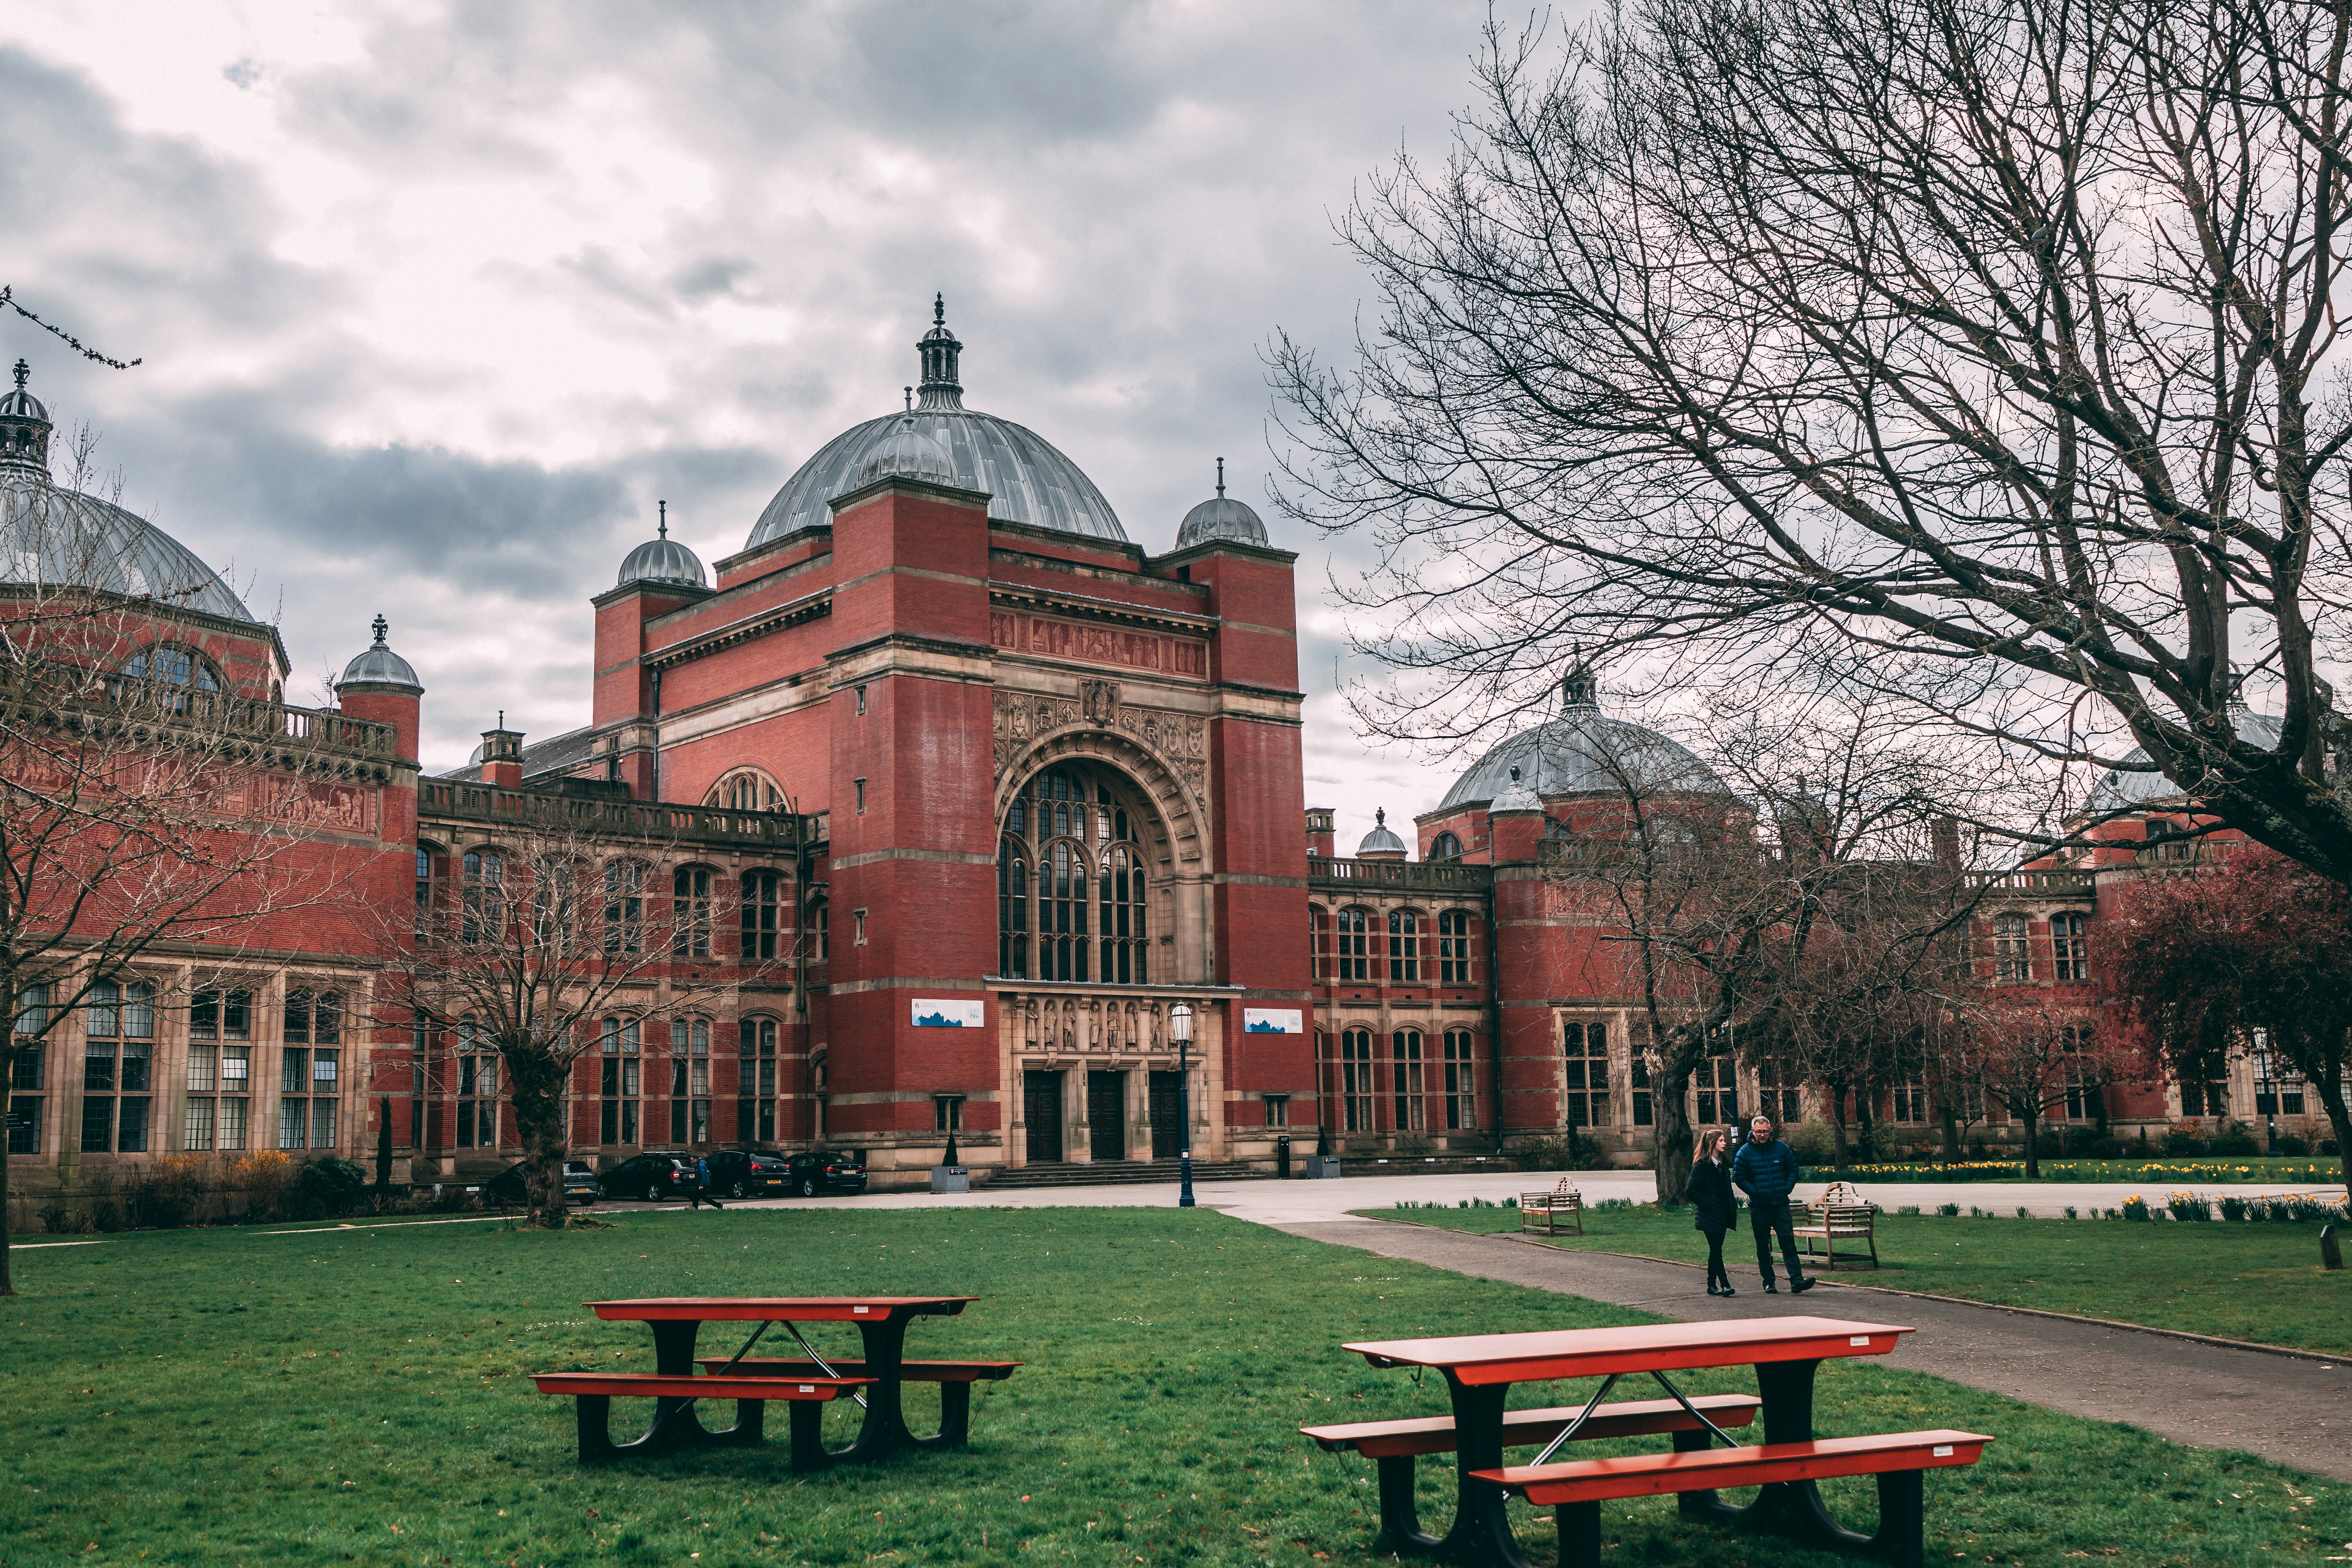 University of Birmingham (Photo by Korng Sok on Unsplash).